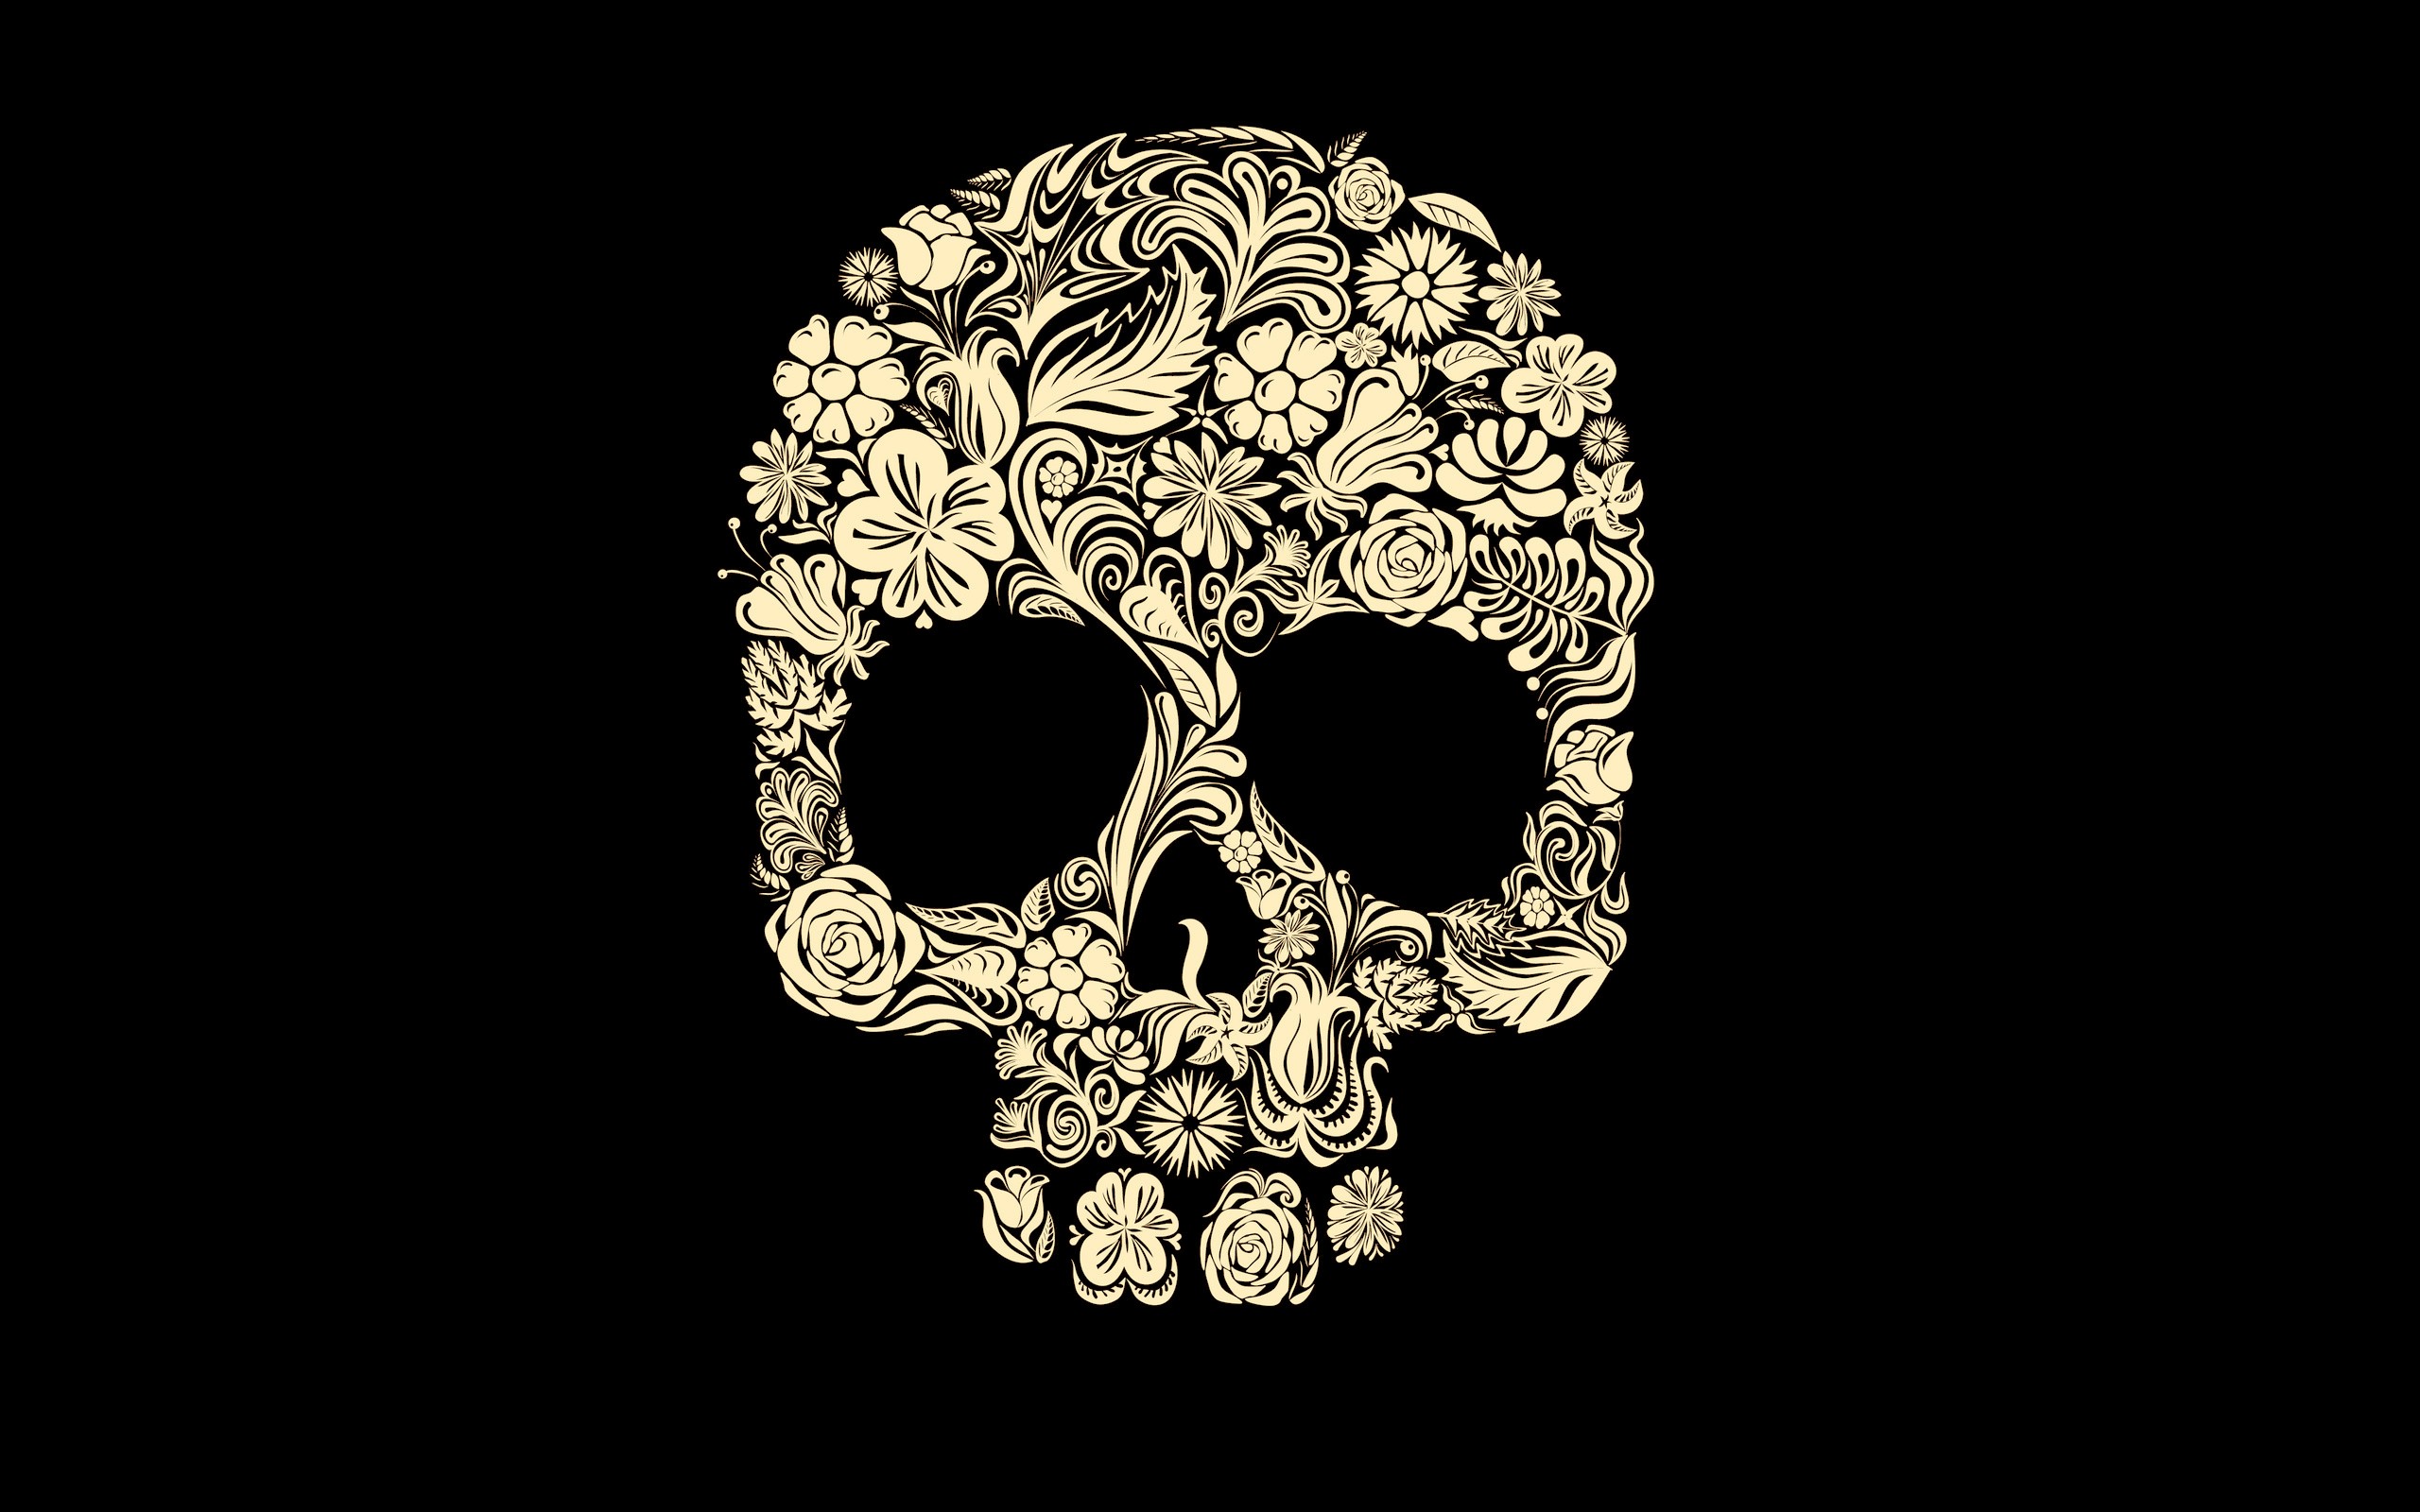 girly skull backgrounds tumblr